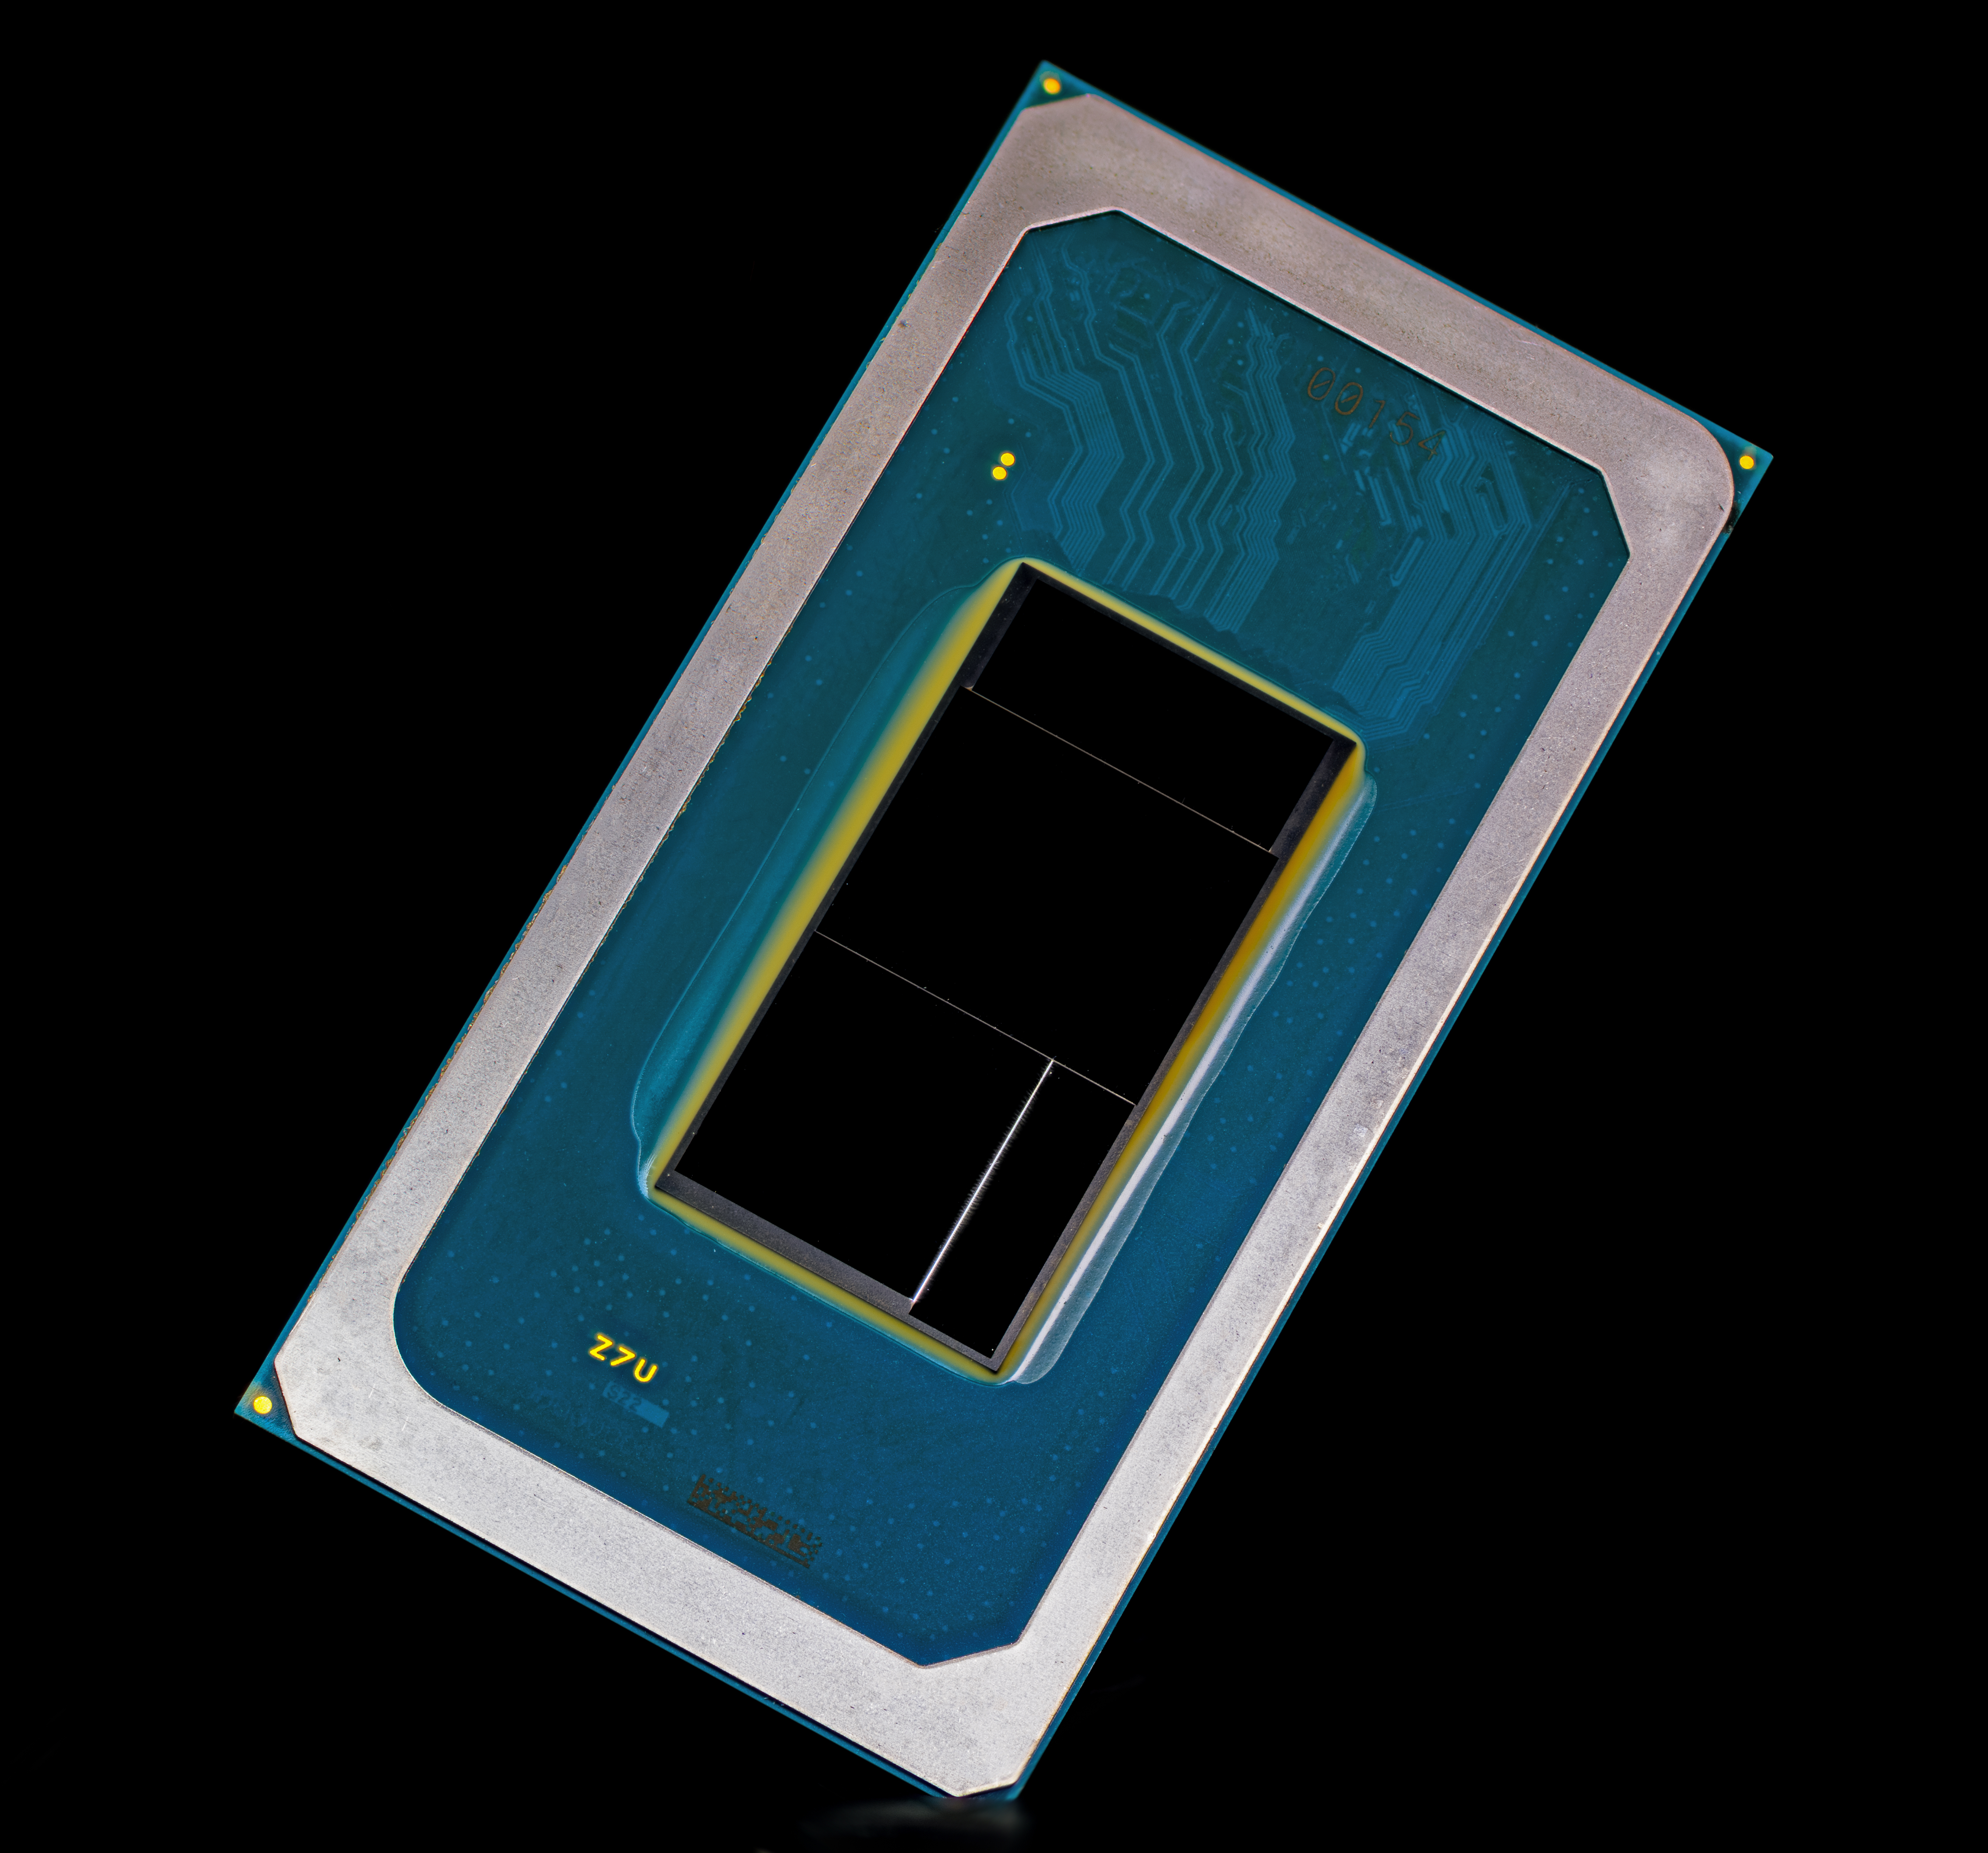 Immagine pubblicata in relazione al seguente contenuto: Intel lancia i processori Core Ultra per i notebook di nuova generazione con AI | Nome immagine: news35119_Intel-Core-Ultra_4.jpg